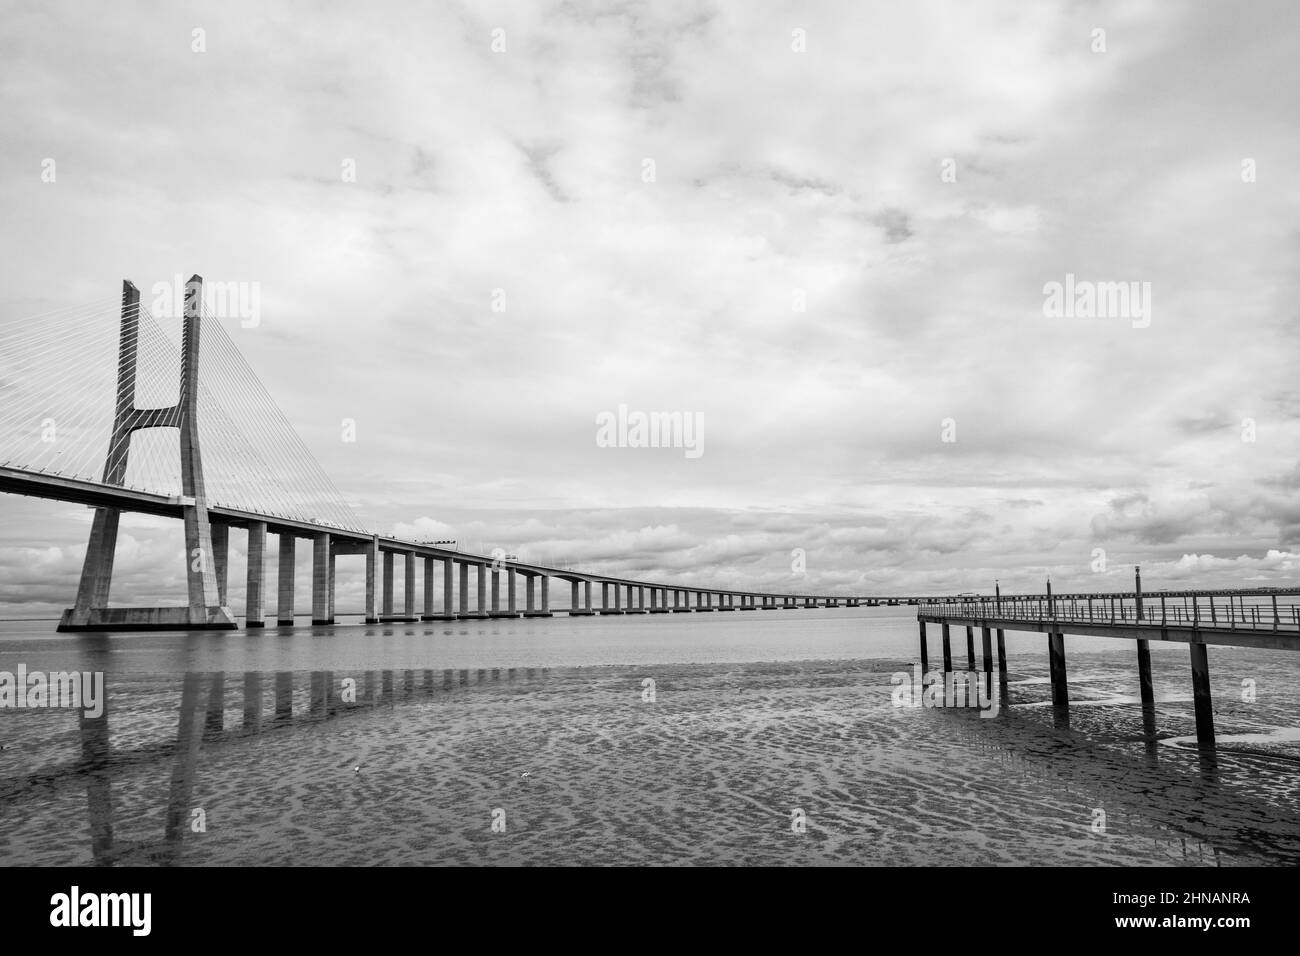 Le plus long pont d'Europe - pont Vasco da Gama à Lisbonne, Ponte Vasco da Gama Banque D'Images